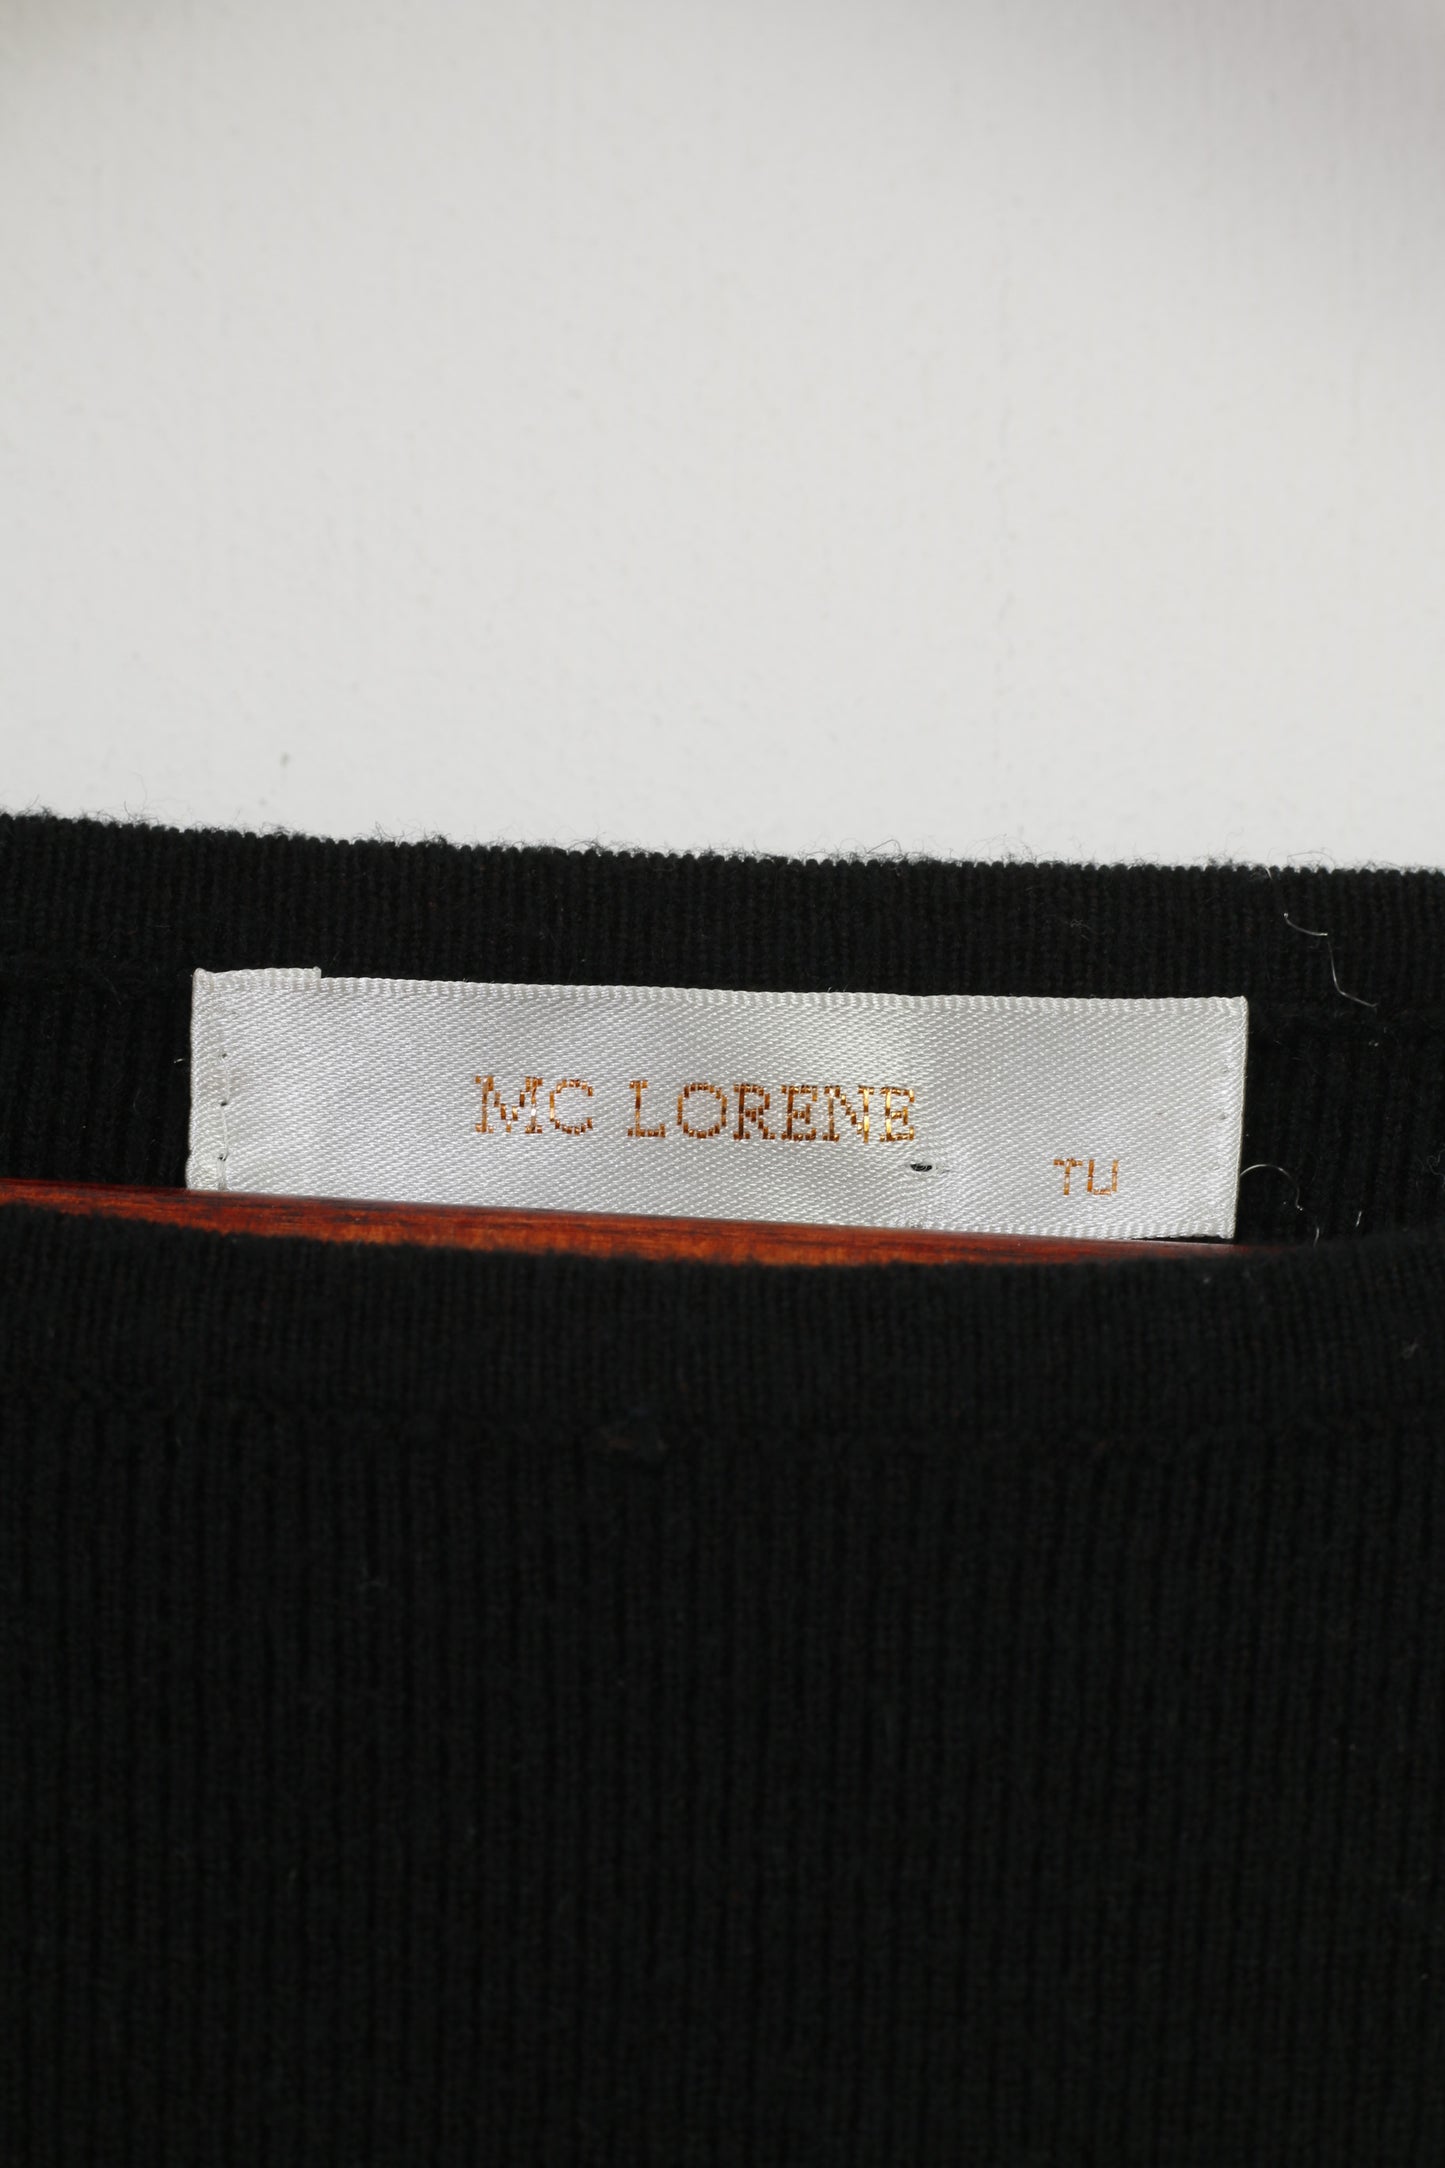 Robe Mc Lorene Woman S noire à manches longues, haut extensible serré